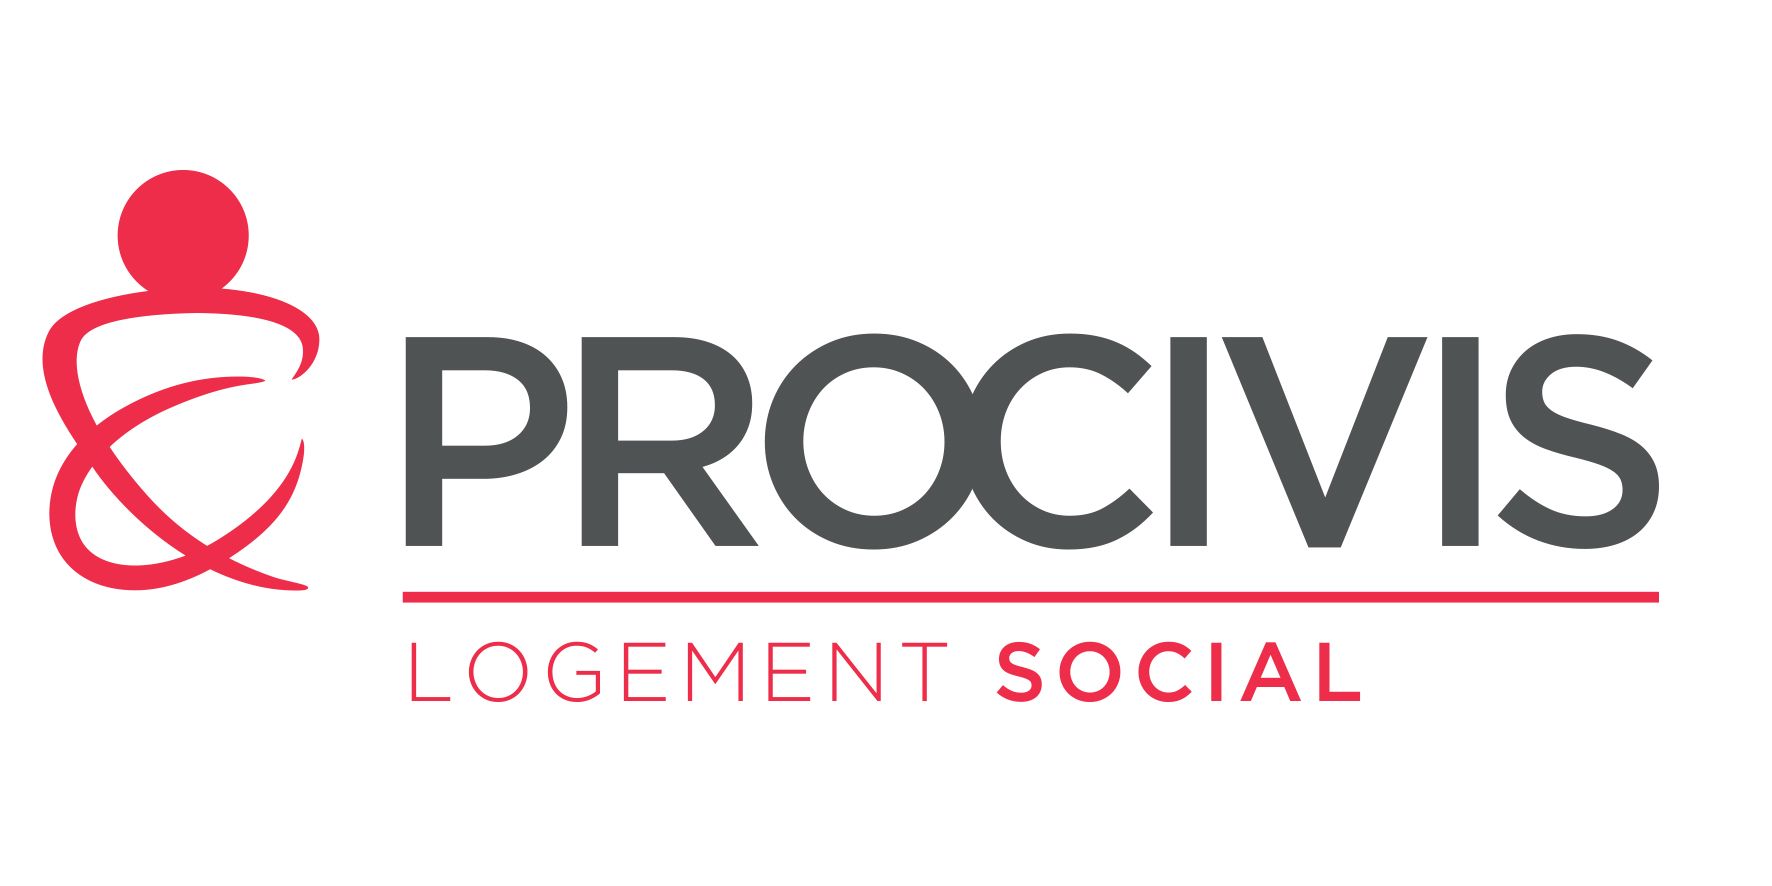 logo_procivis_logement_social_h